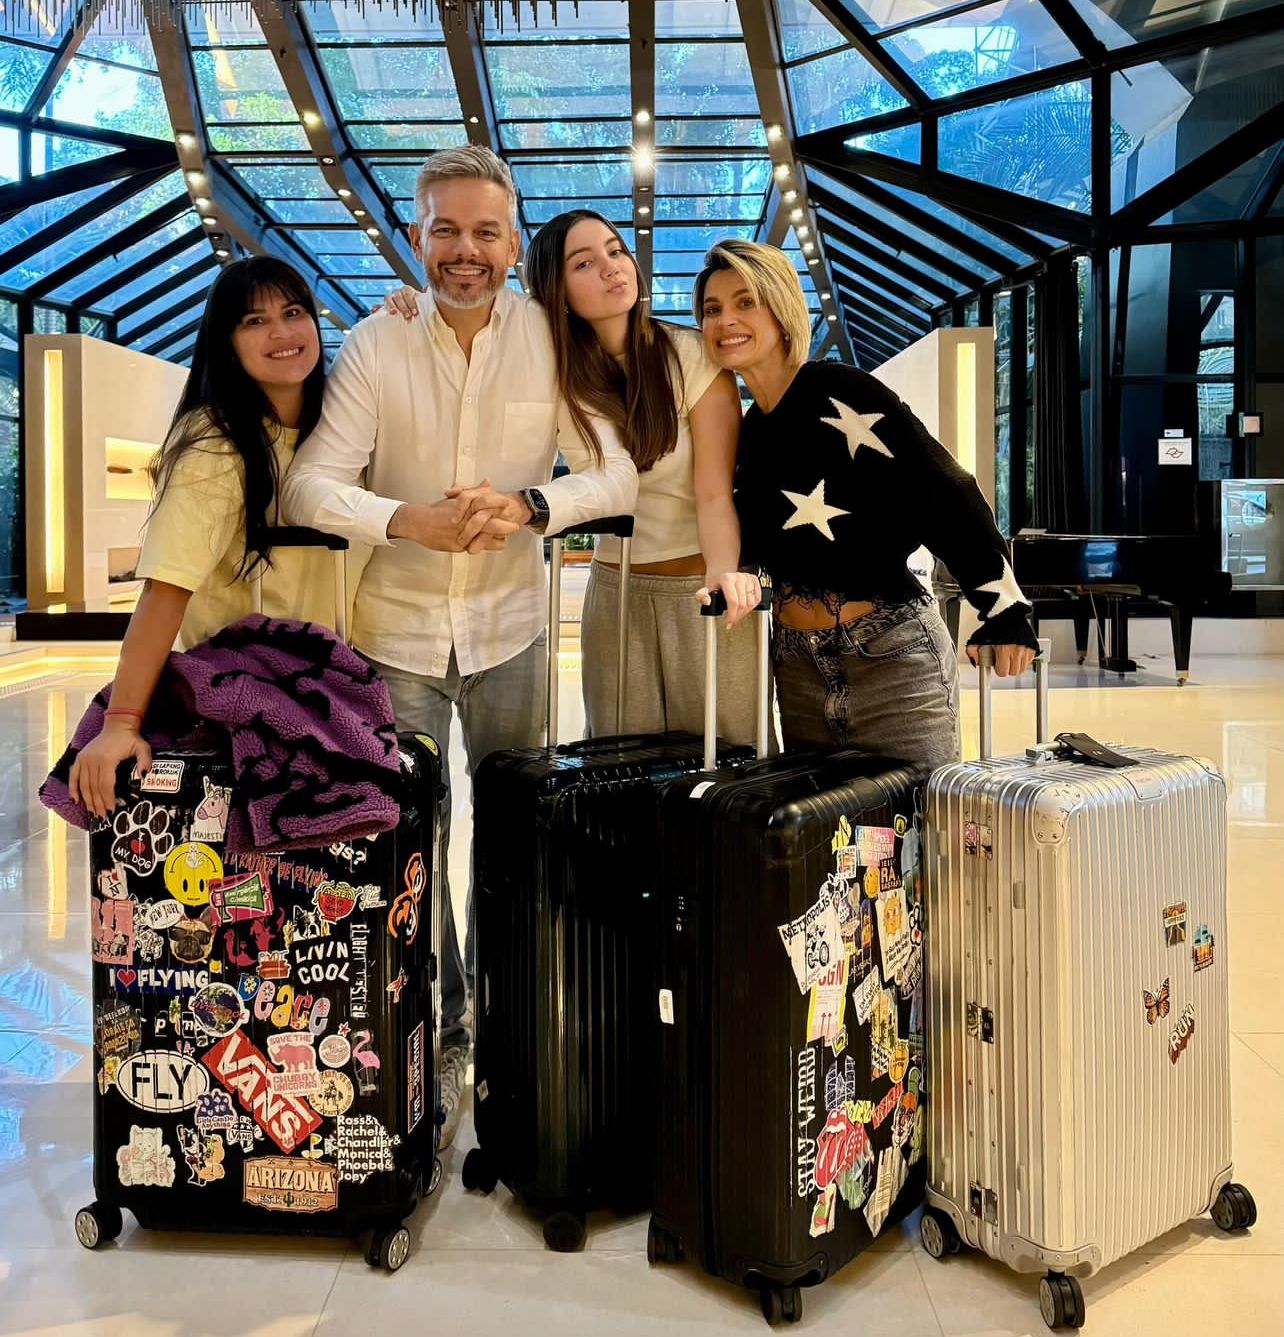 Otaviano Costa embarca com a família em SP após ser submetido a cirurgia e receber alta: “Voltando para casa”